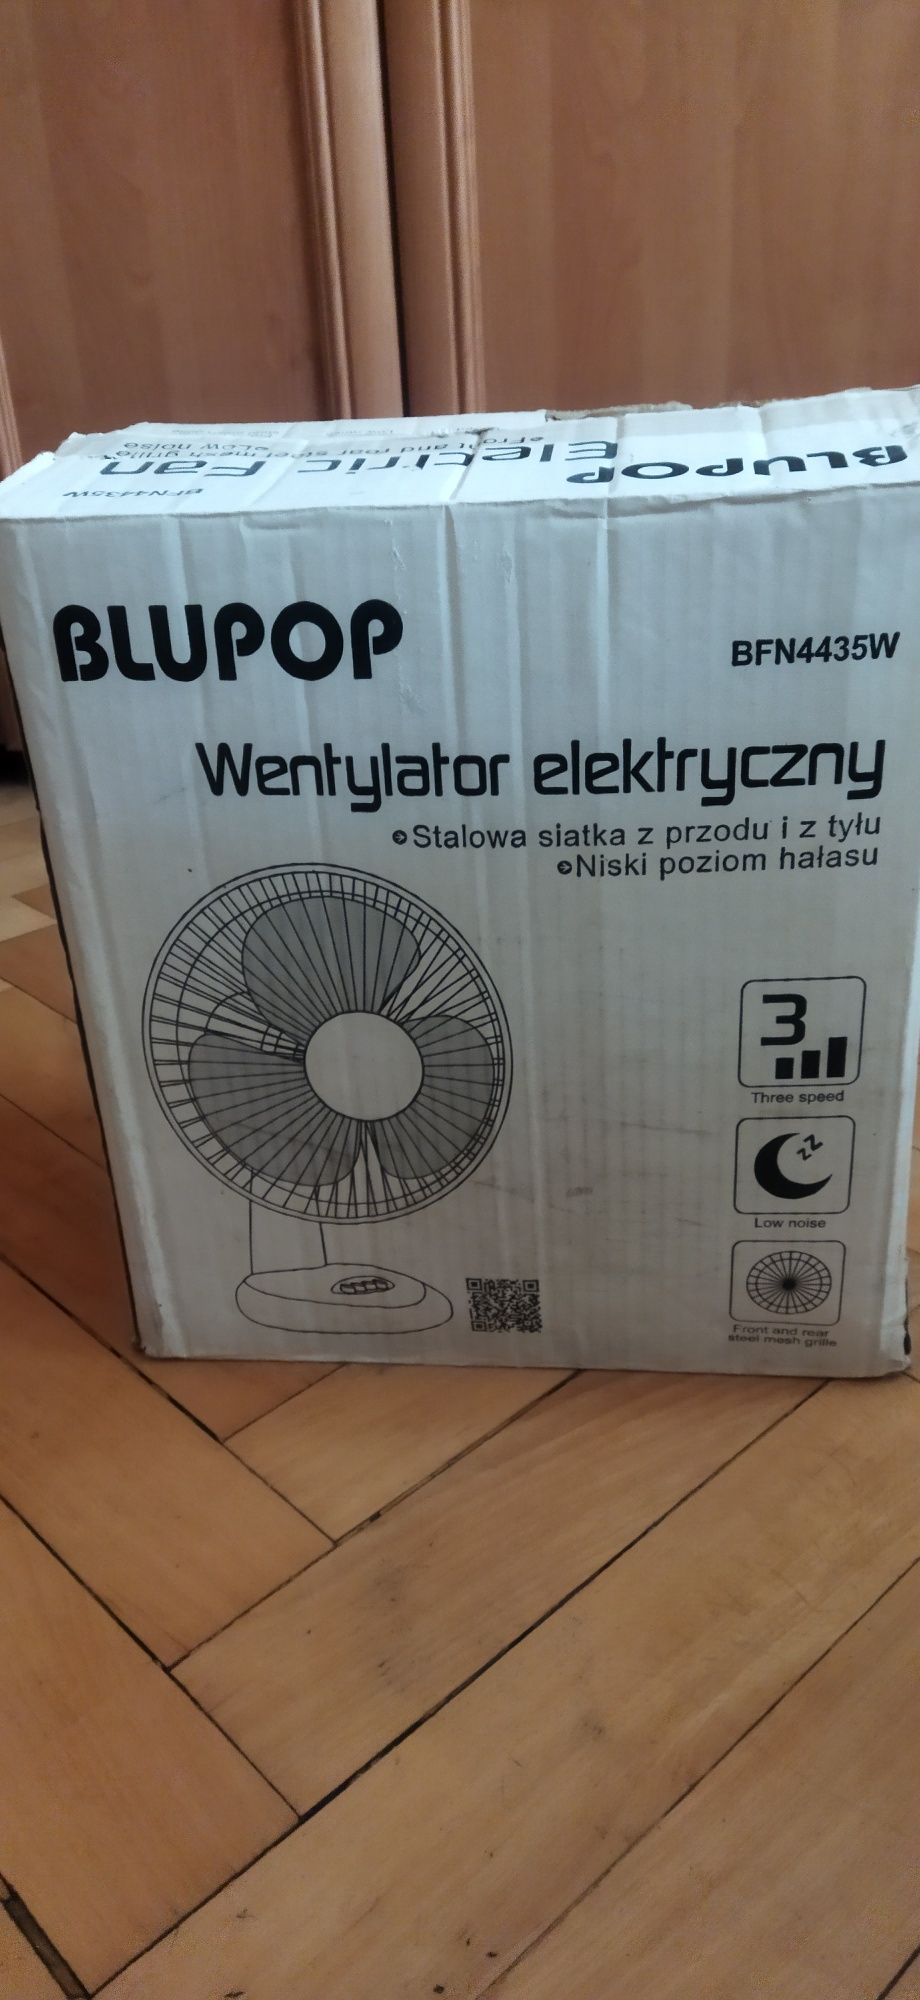 Wentylator elektryczny Blupop